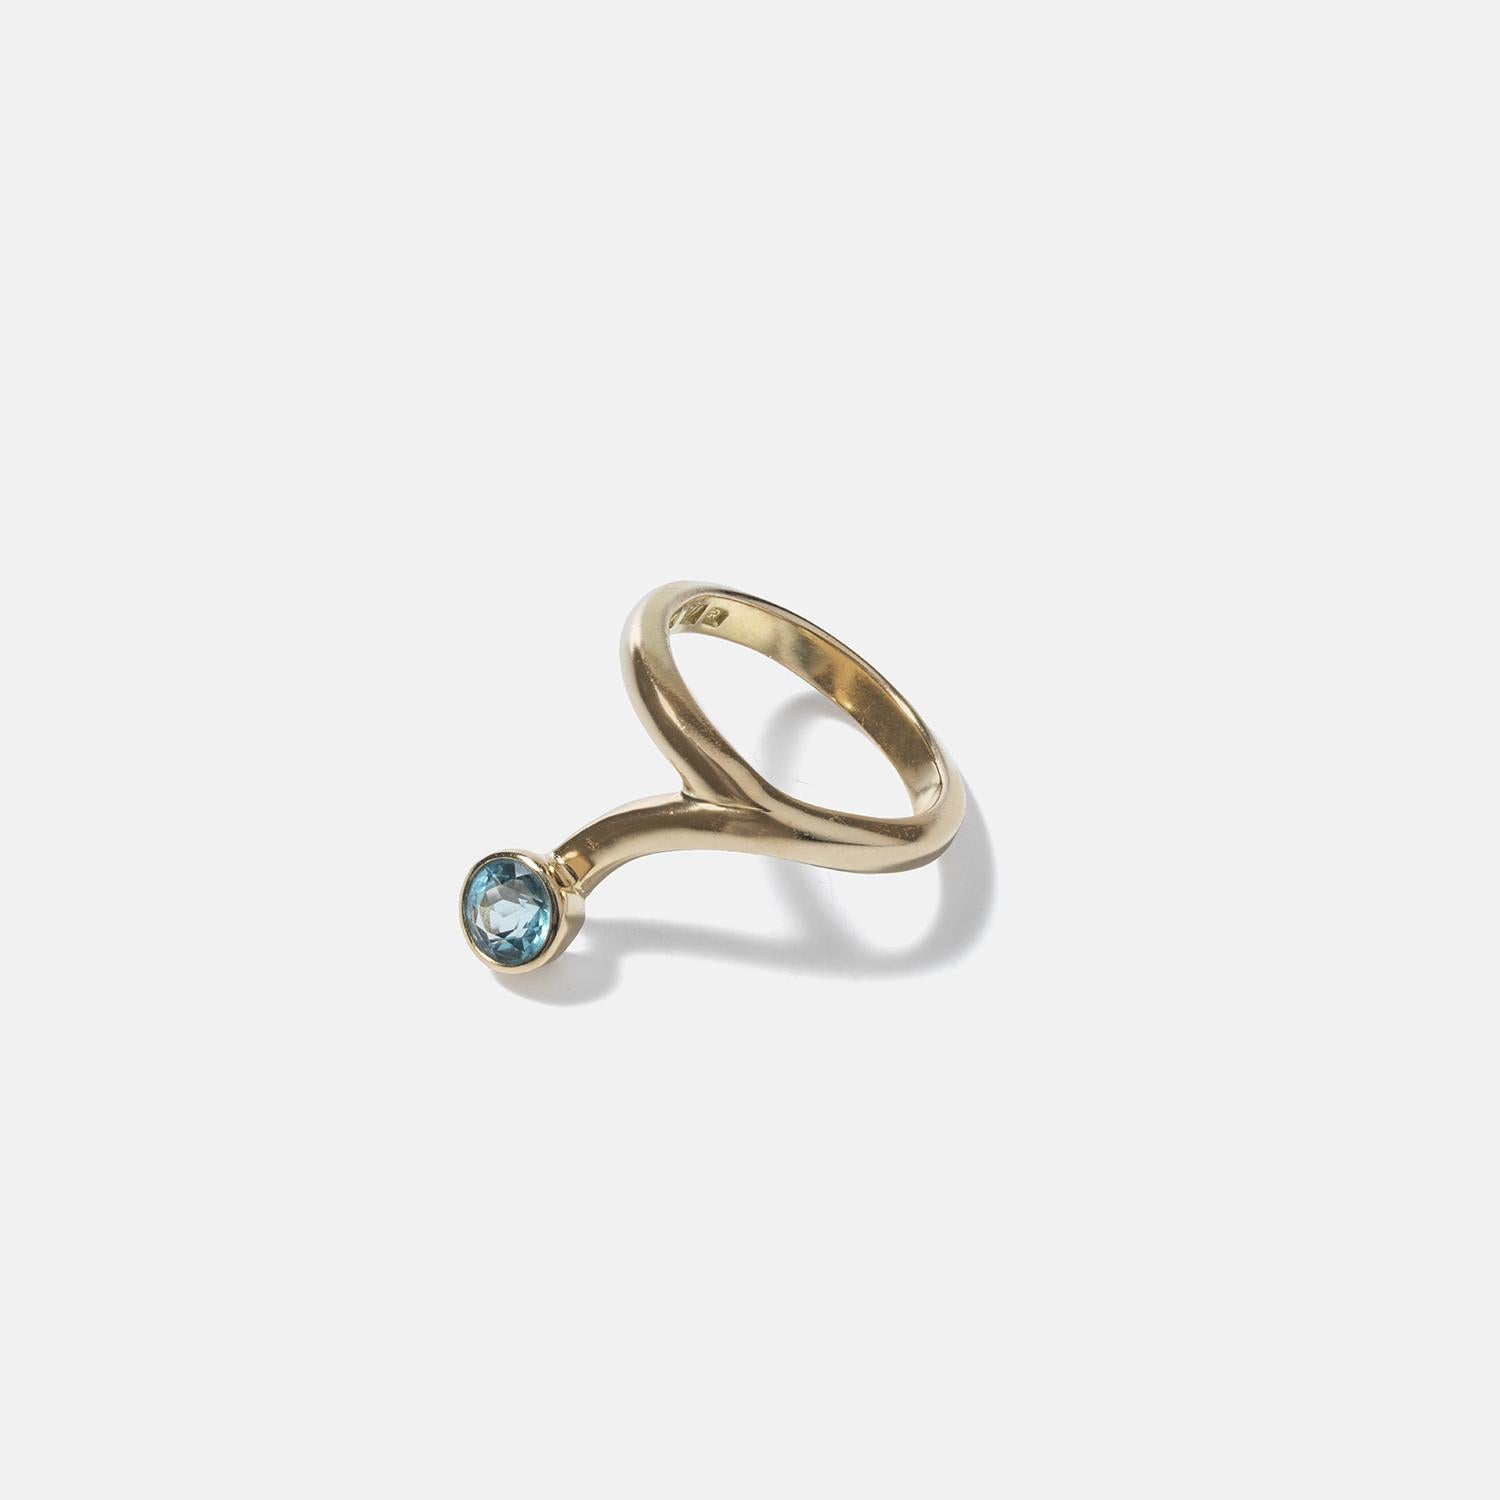 Cette bague en or 18 carats est ornée d'une pierre turquoise ronde enchâssée à l'extrémité, ajoutant un contraste vibrant à l'or. La bande s'enroule en spirale autour du doigt à la manière d'un serpent, ce qui lui confère une touche exotique et